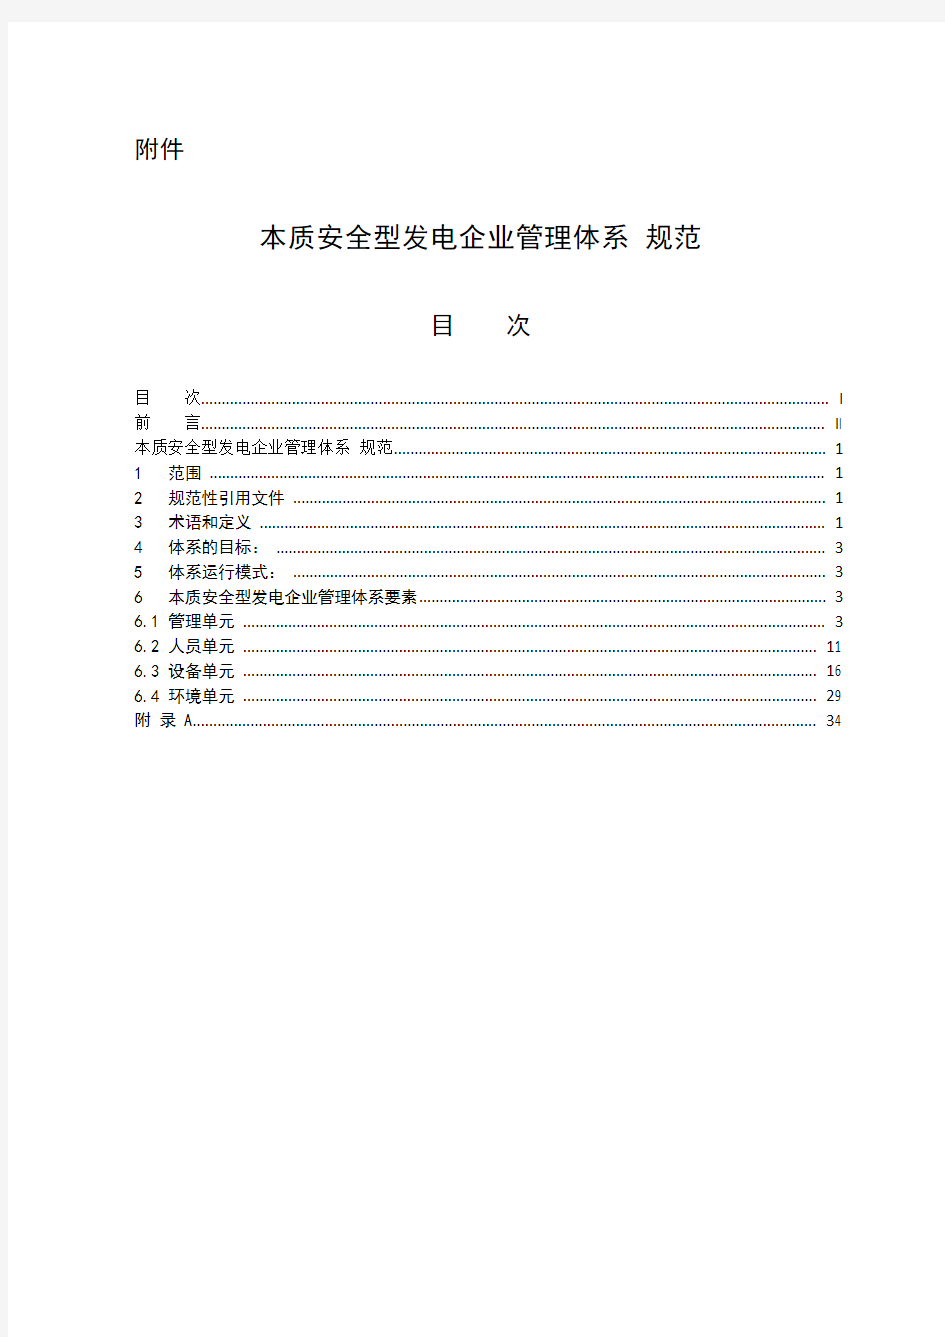 2020年6中国大唐集团公司本质安全型发电企业管理体系规范参照模板